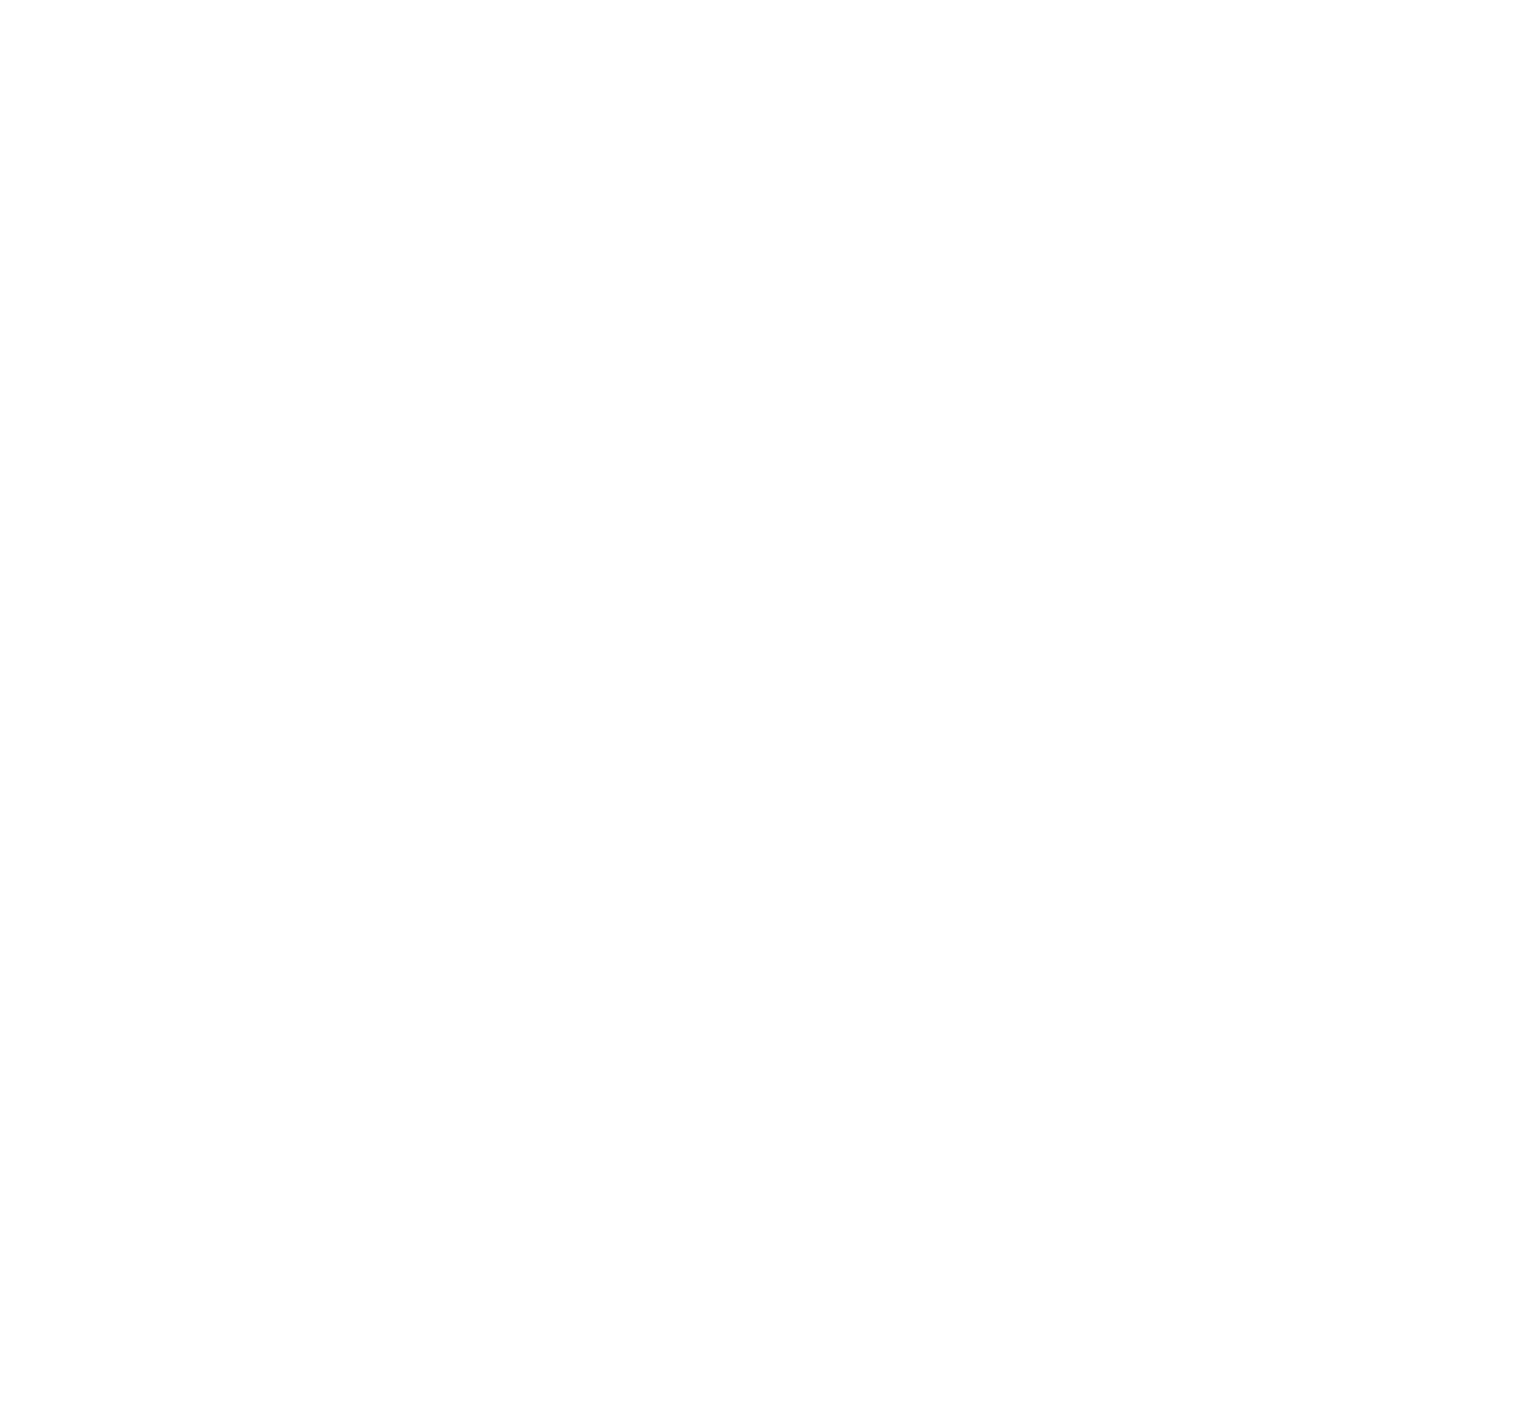 Jastrzebska Spólka Weglowa logo for dark backgrounds (transparent PNG)